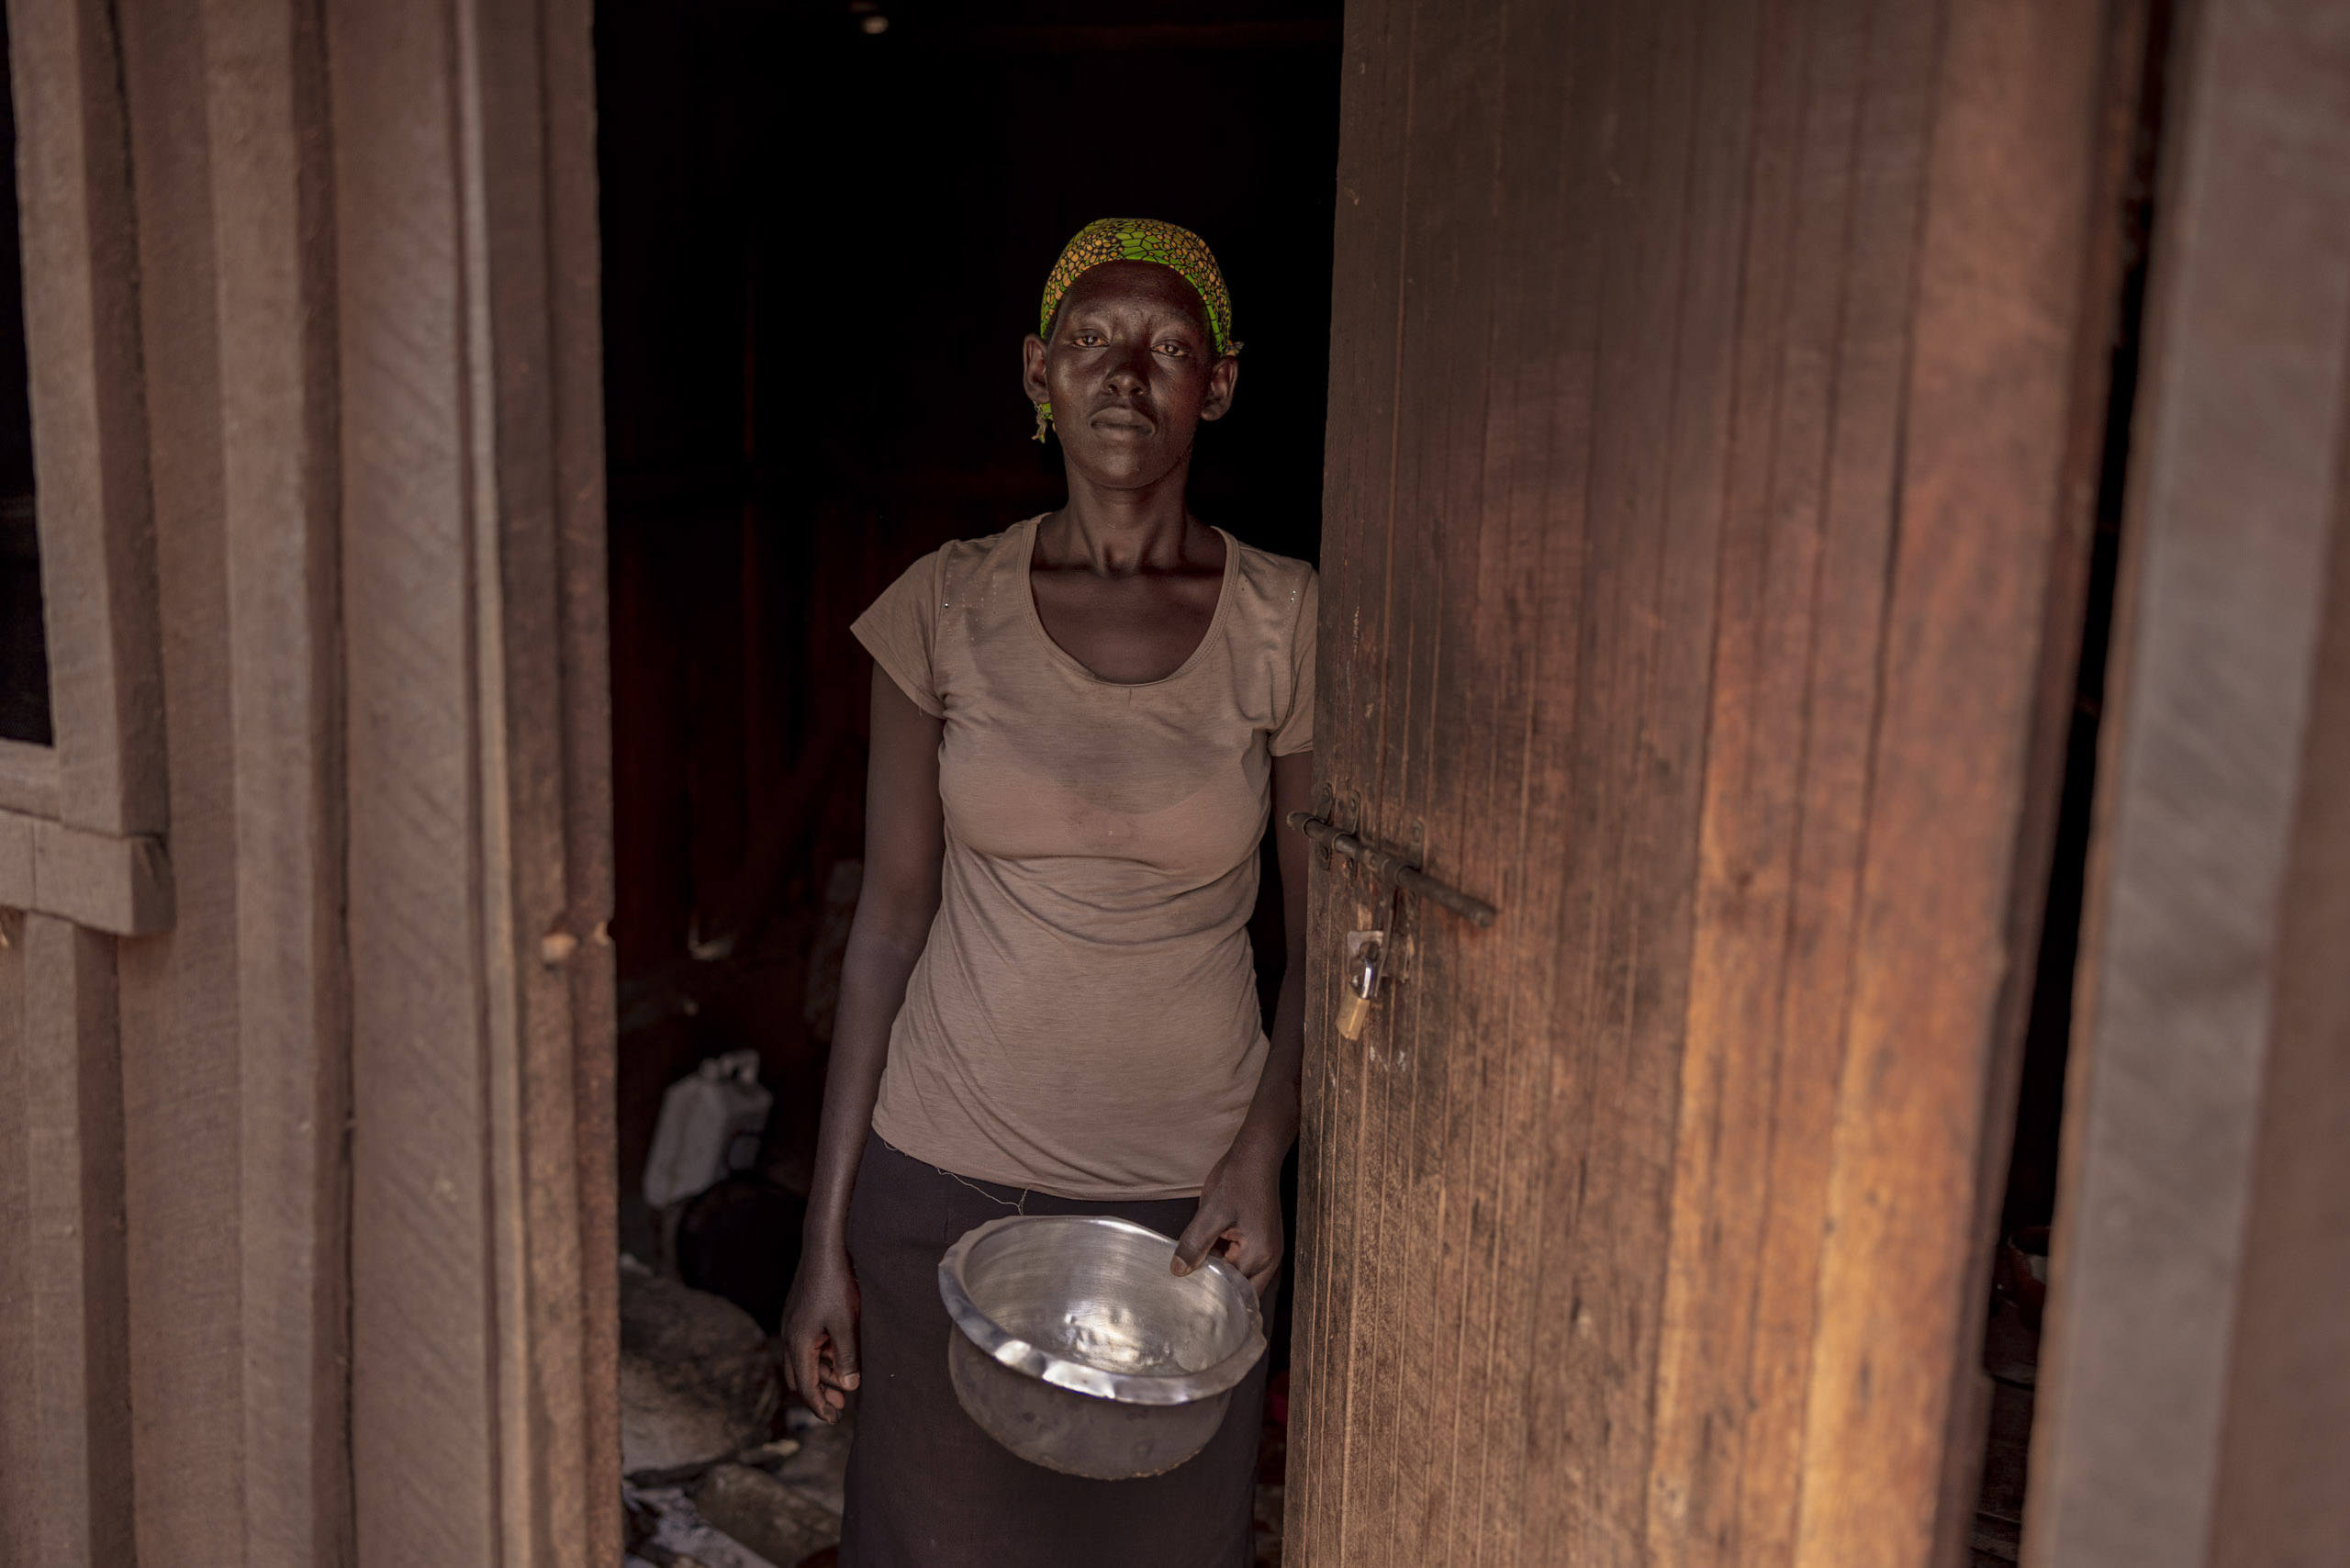 Eine Frau steht mit ernster Miene in einer Tür, hält eine Metallschüssel in der Hand. Sie trägt ein braunes Oberteil und ein buntes Stirnband. Der Hintergrund ist schwach beleuchtet, was ihre Präsenz im Bild betont. © Fotografie Tomas Rodriguez